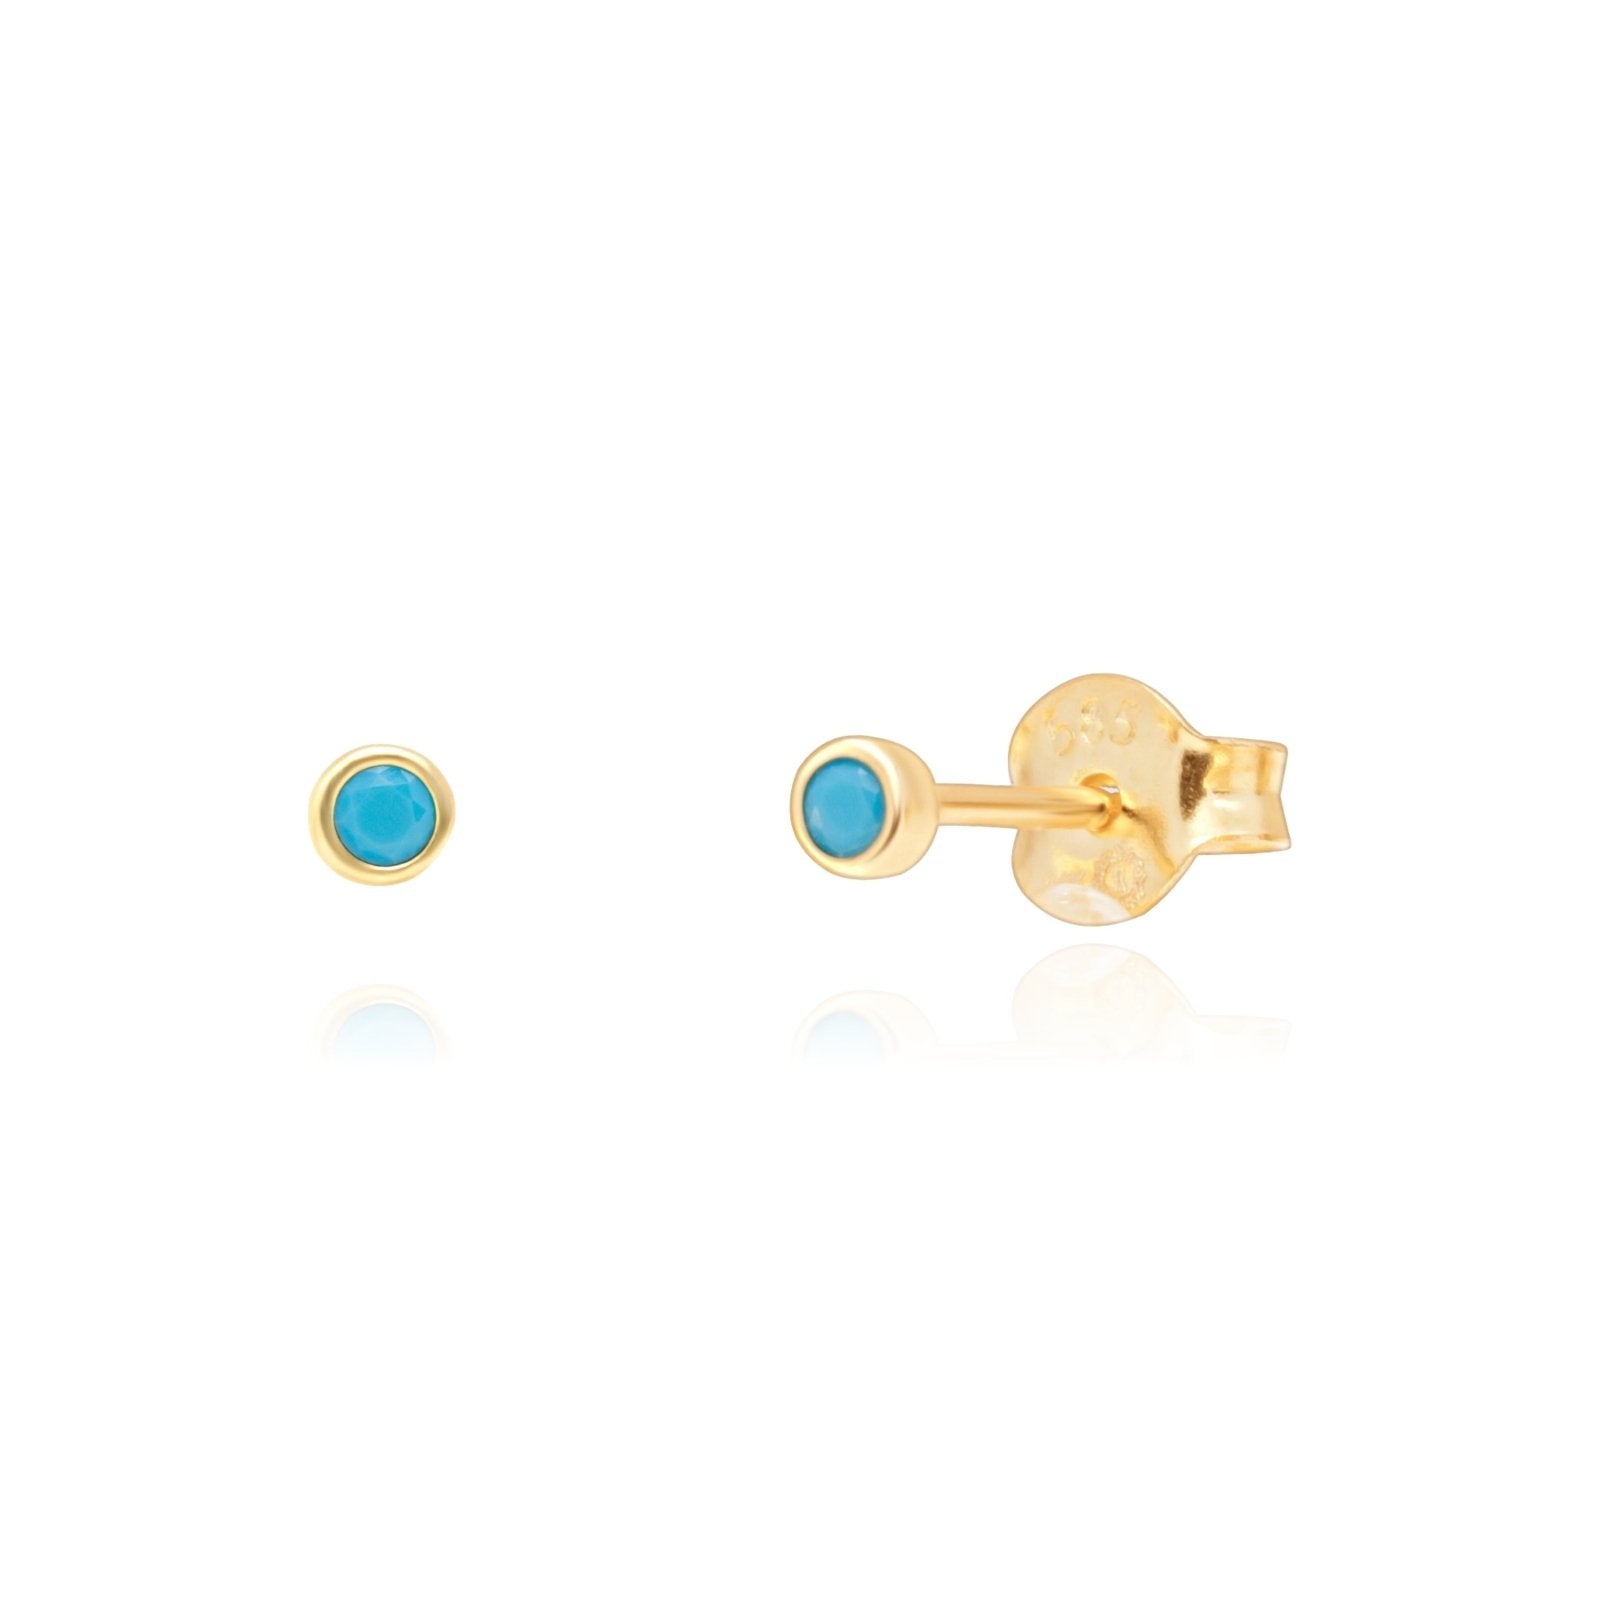 Turquoise Earrings Bezel Earrings Estella Collection #product_description# 14k Birthstone Earrings #tag4# #tag5# #tag6# #tag7# #tag8# #tag9# #tag10#